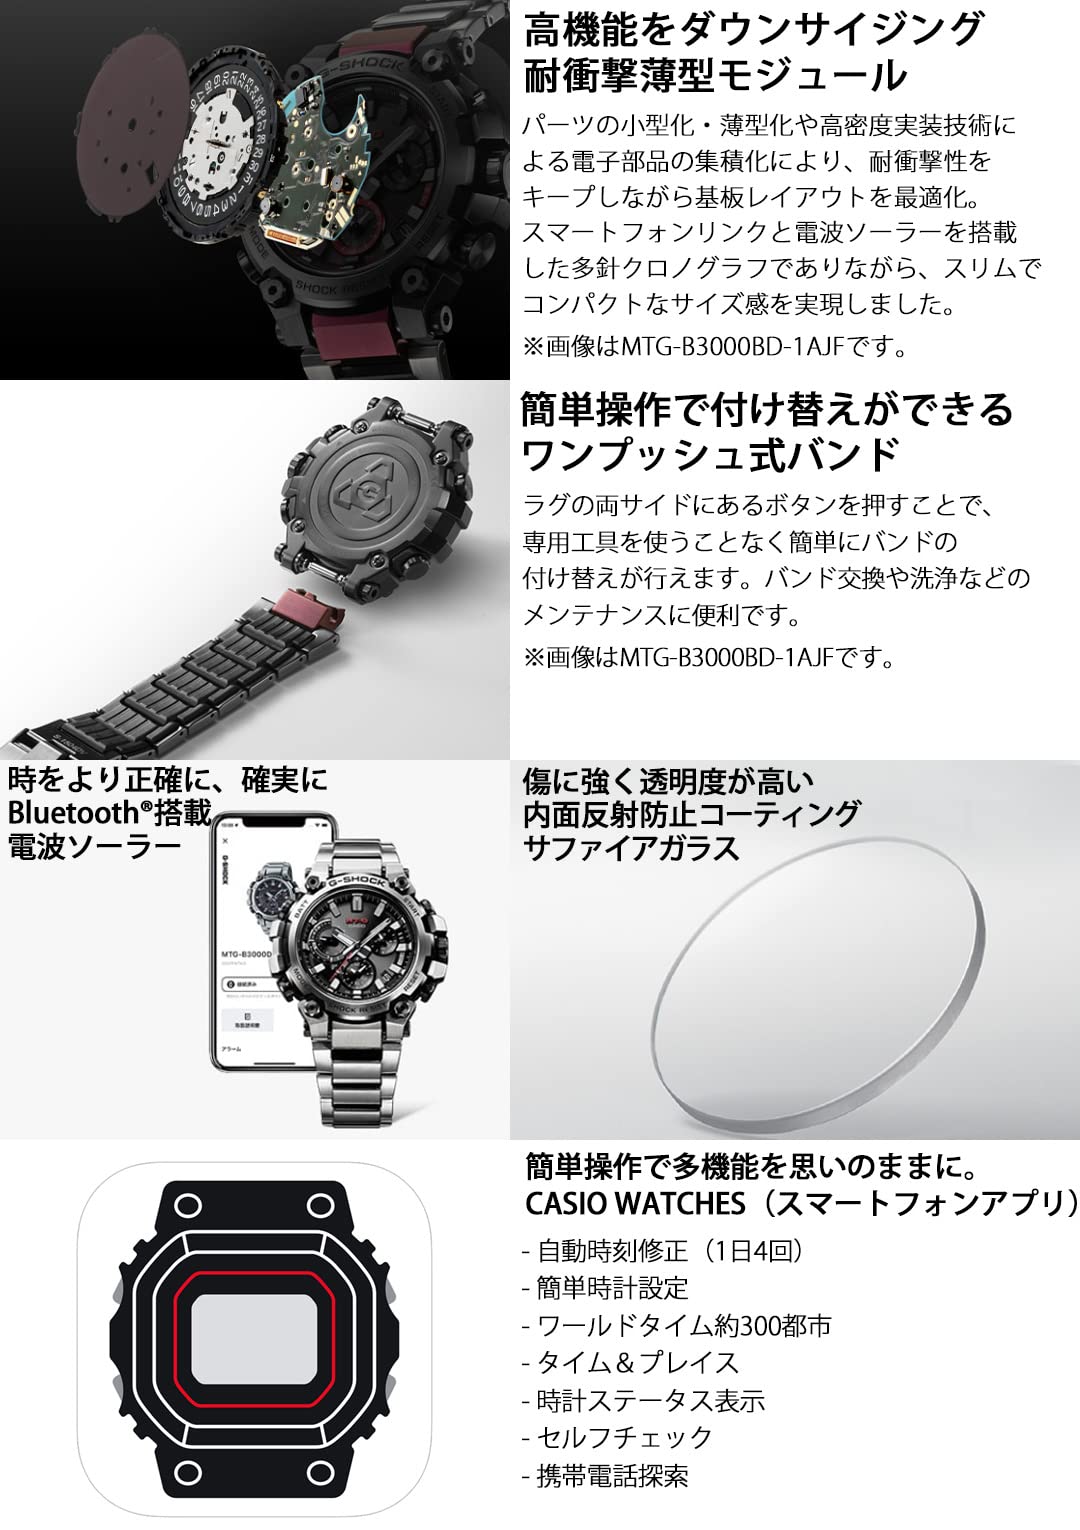 [カシオ] 腕時計 ジーショック 【国内正規品】日本製 MT-G Bluetooth 搭載 電波ソーラー MTG-B3000D-1AJF メンズ シルバー - BanzaiHobby